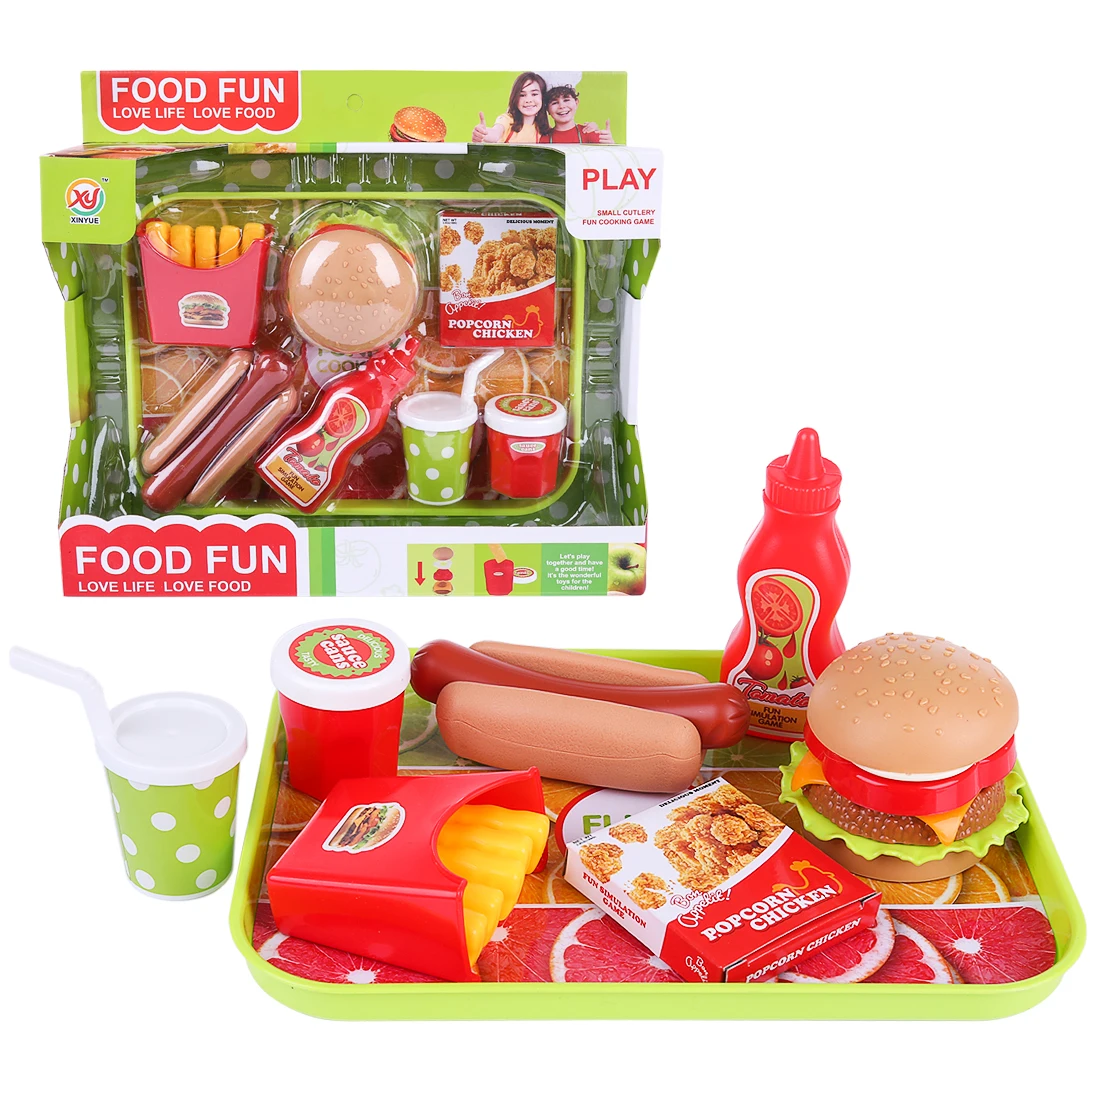 Дети ролевые игры миниатюрные забавные Кухня пластик еда гамбургер фаст-фуд Playset Развивающие игрушки для детей подарок 3 размера